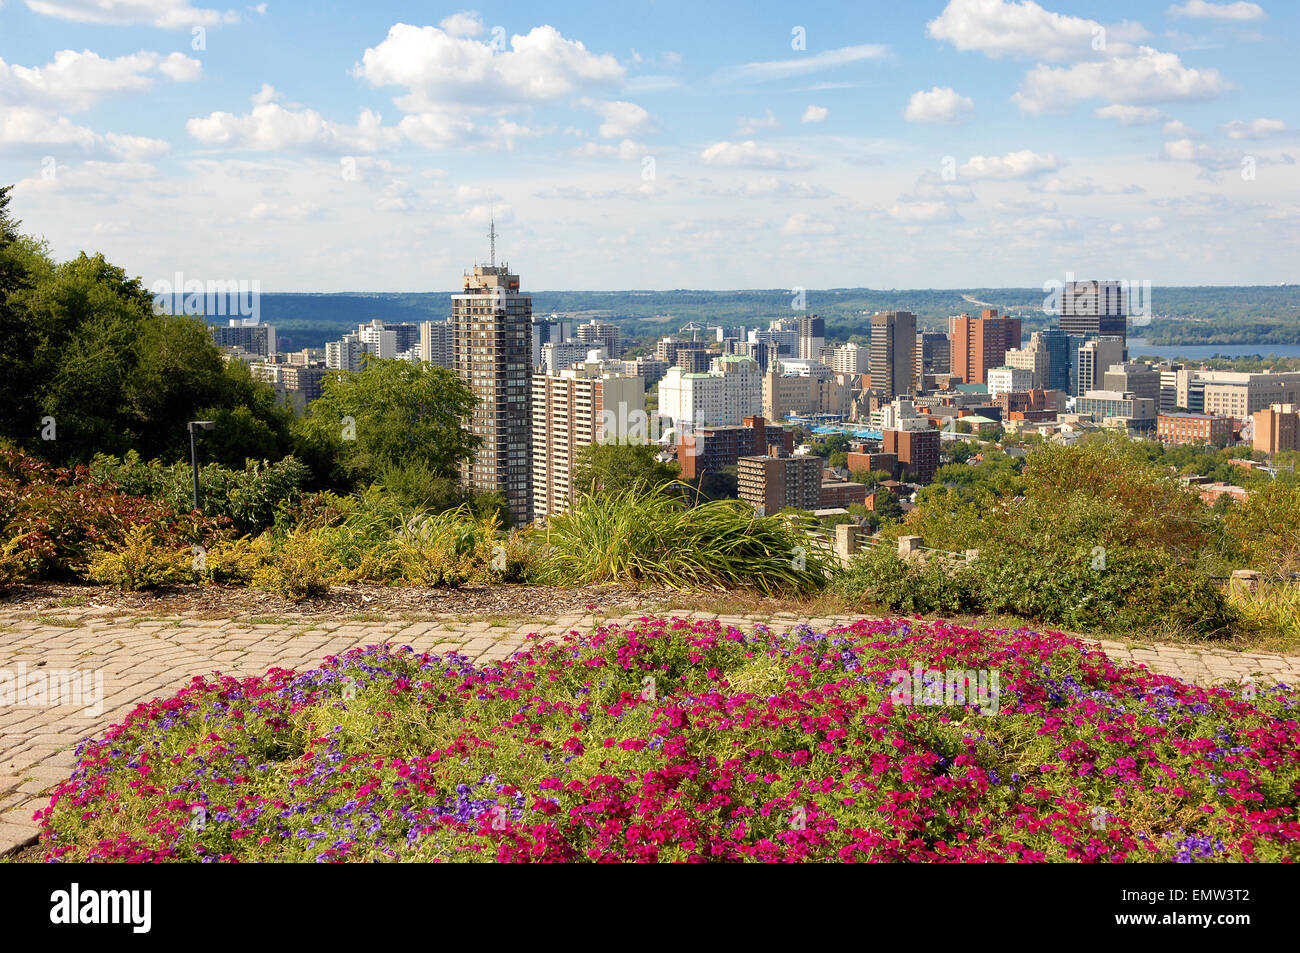 Eine hohe Aussicht vom Berg der Innenstadt von Hamilton, Kanada mit einem Park im Vordergrund. Stockfoto